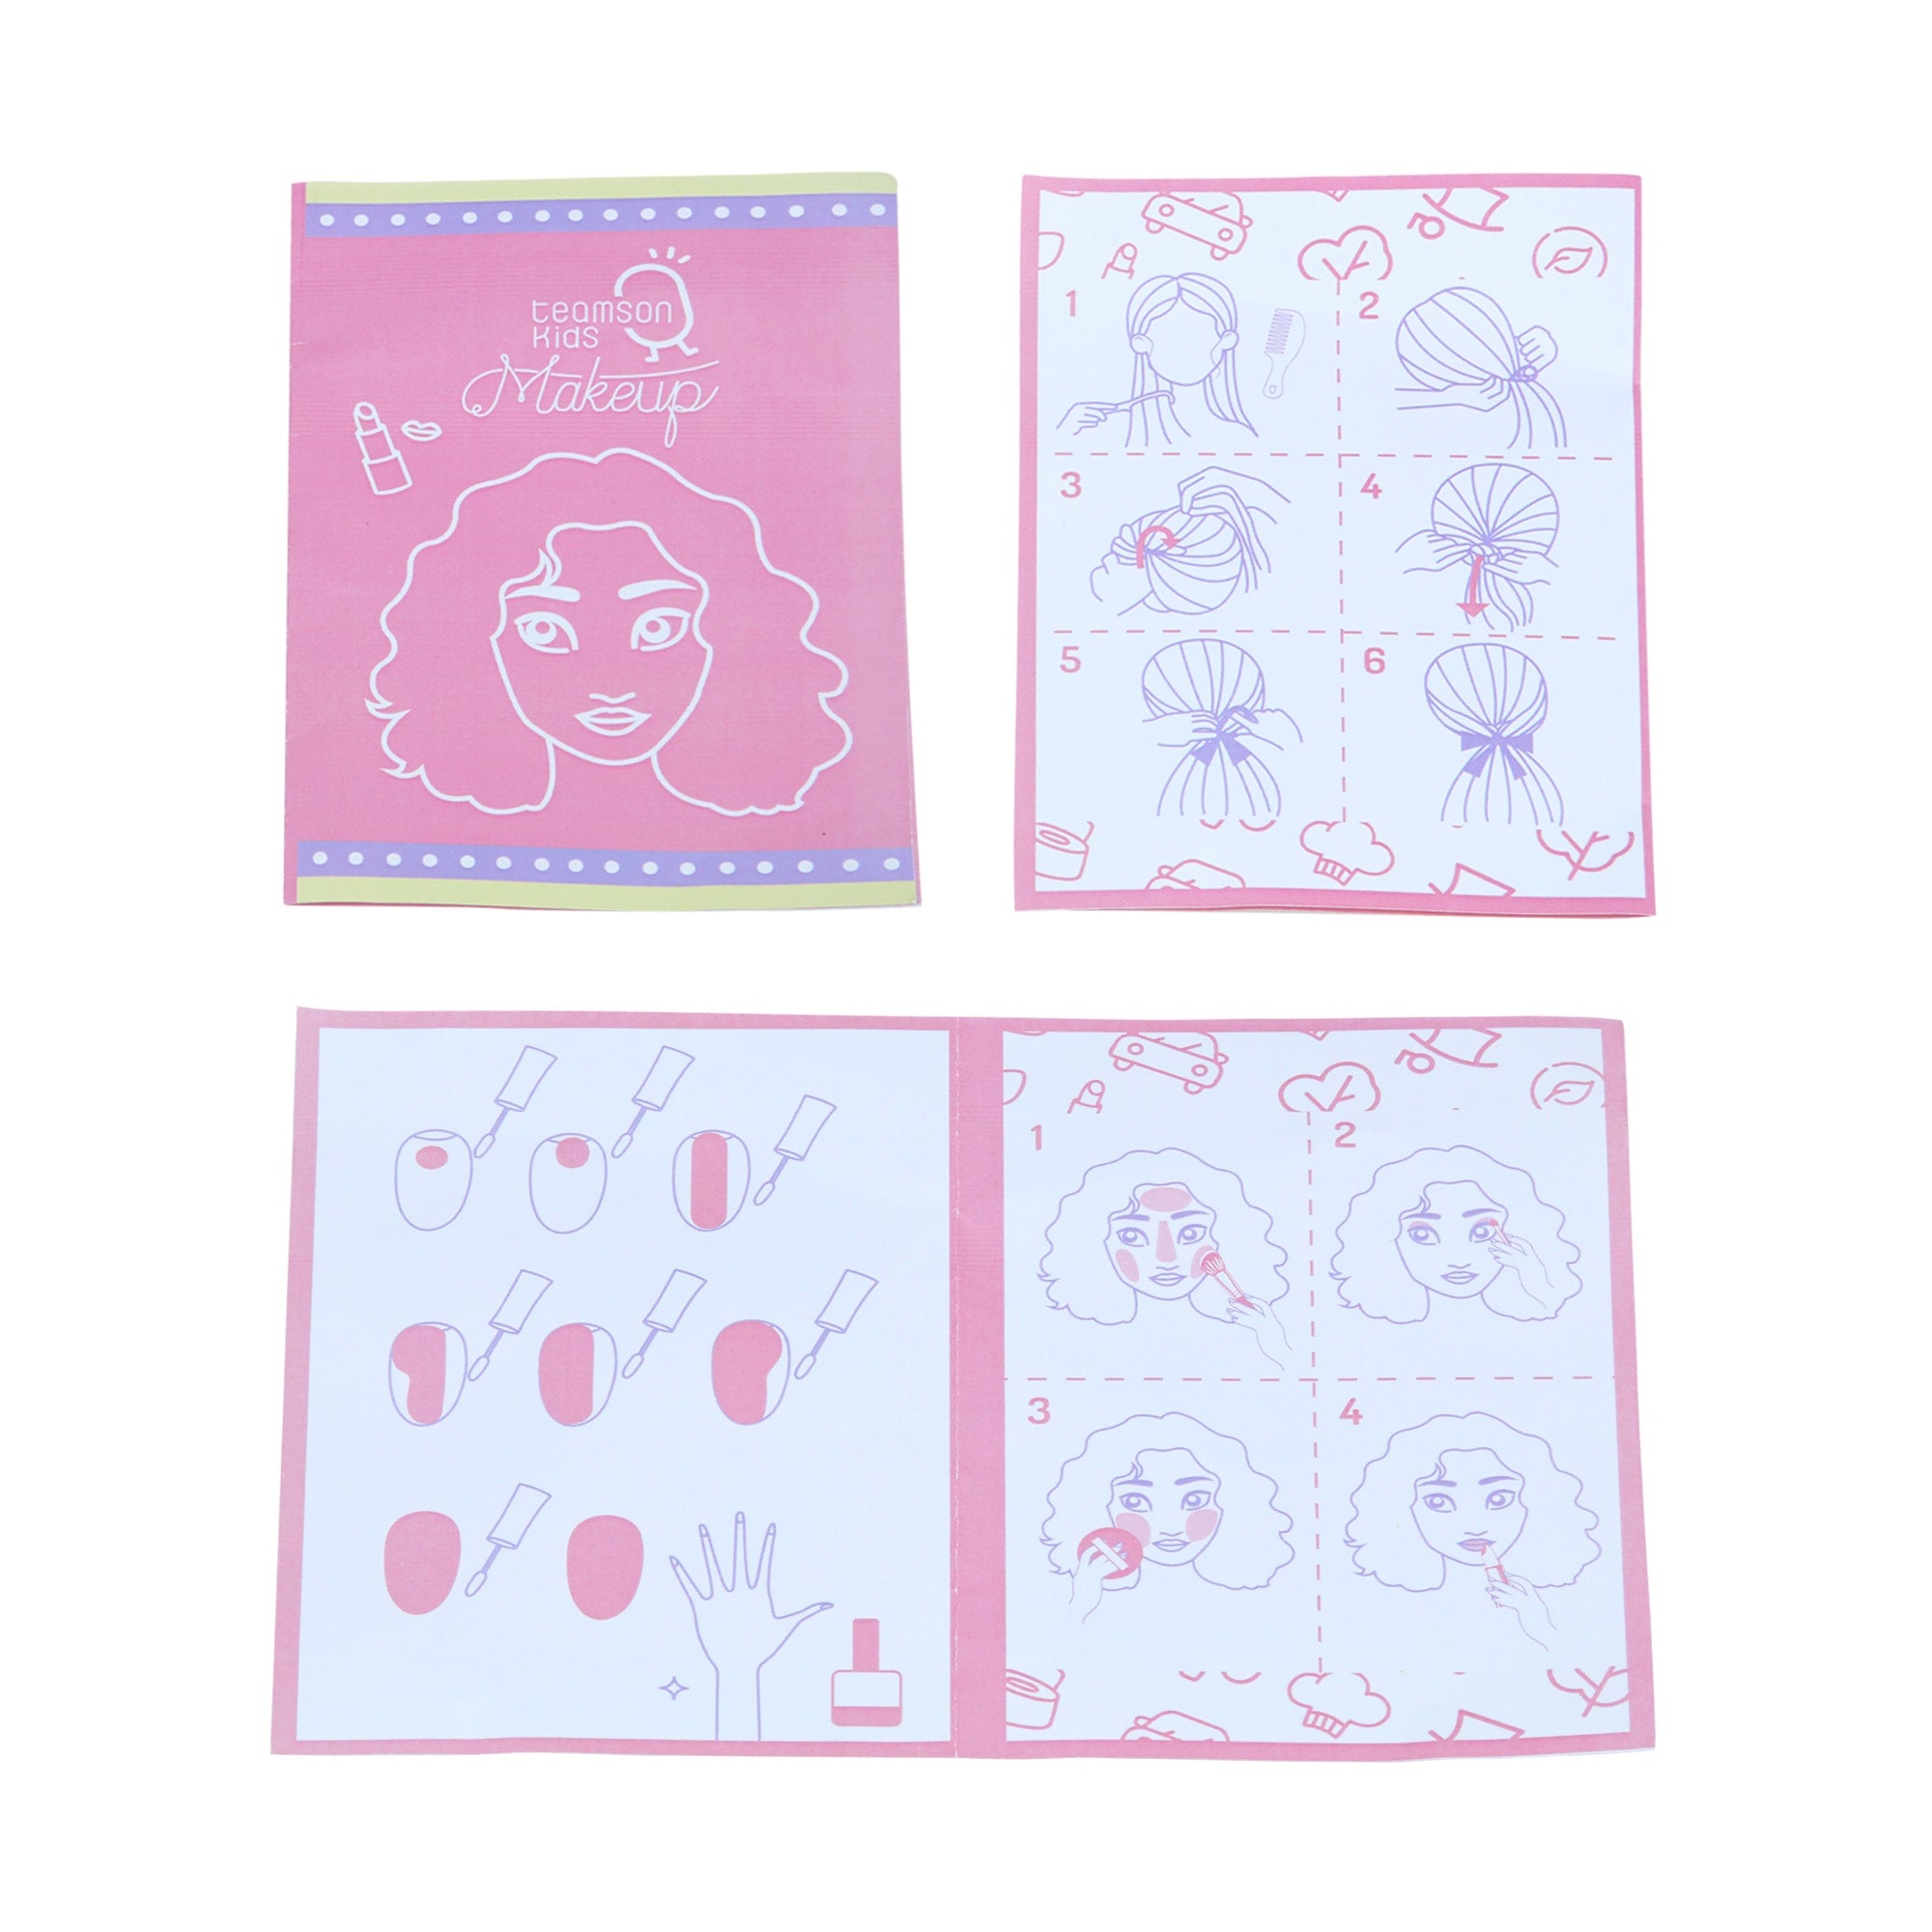 Teamson Kids - Little Dreamer Rainbow Tabletop Vanity Toys - Pink